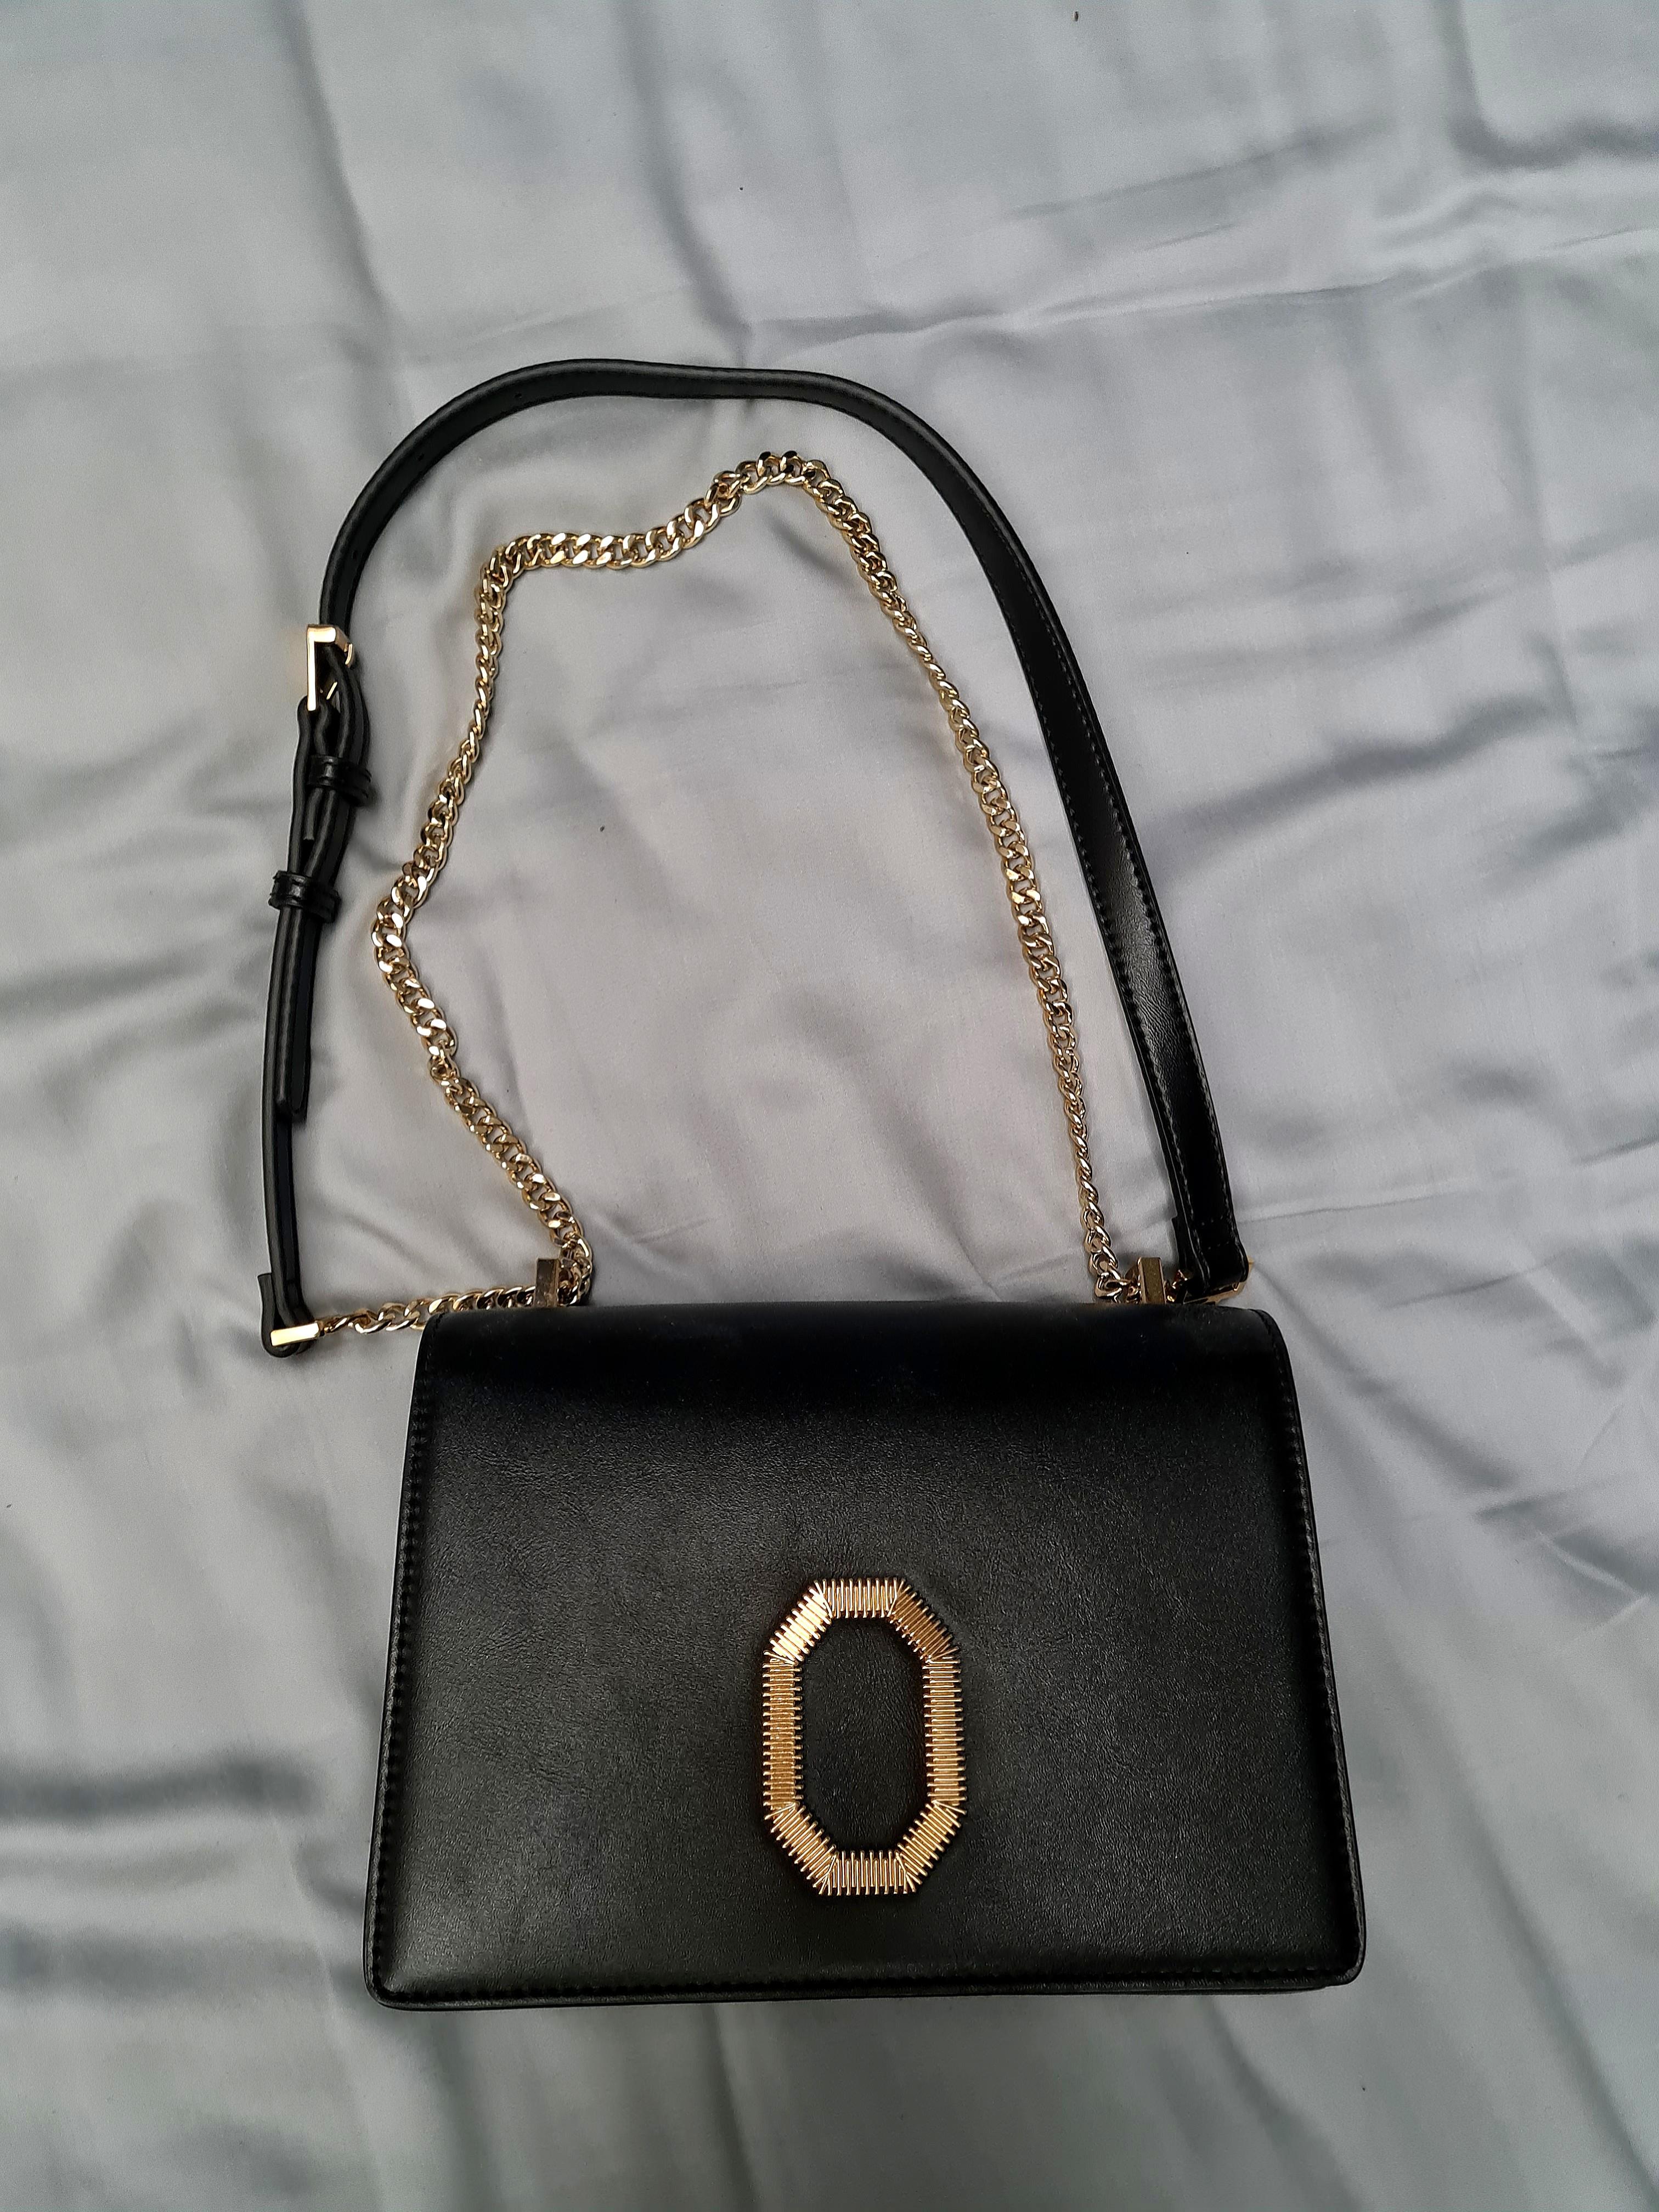  Pedro  shoulder bag  black colour with gold hardware 